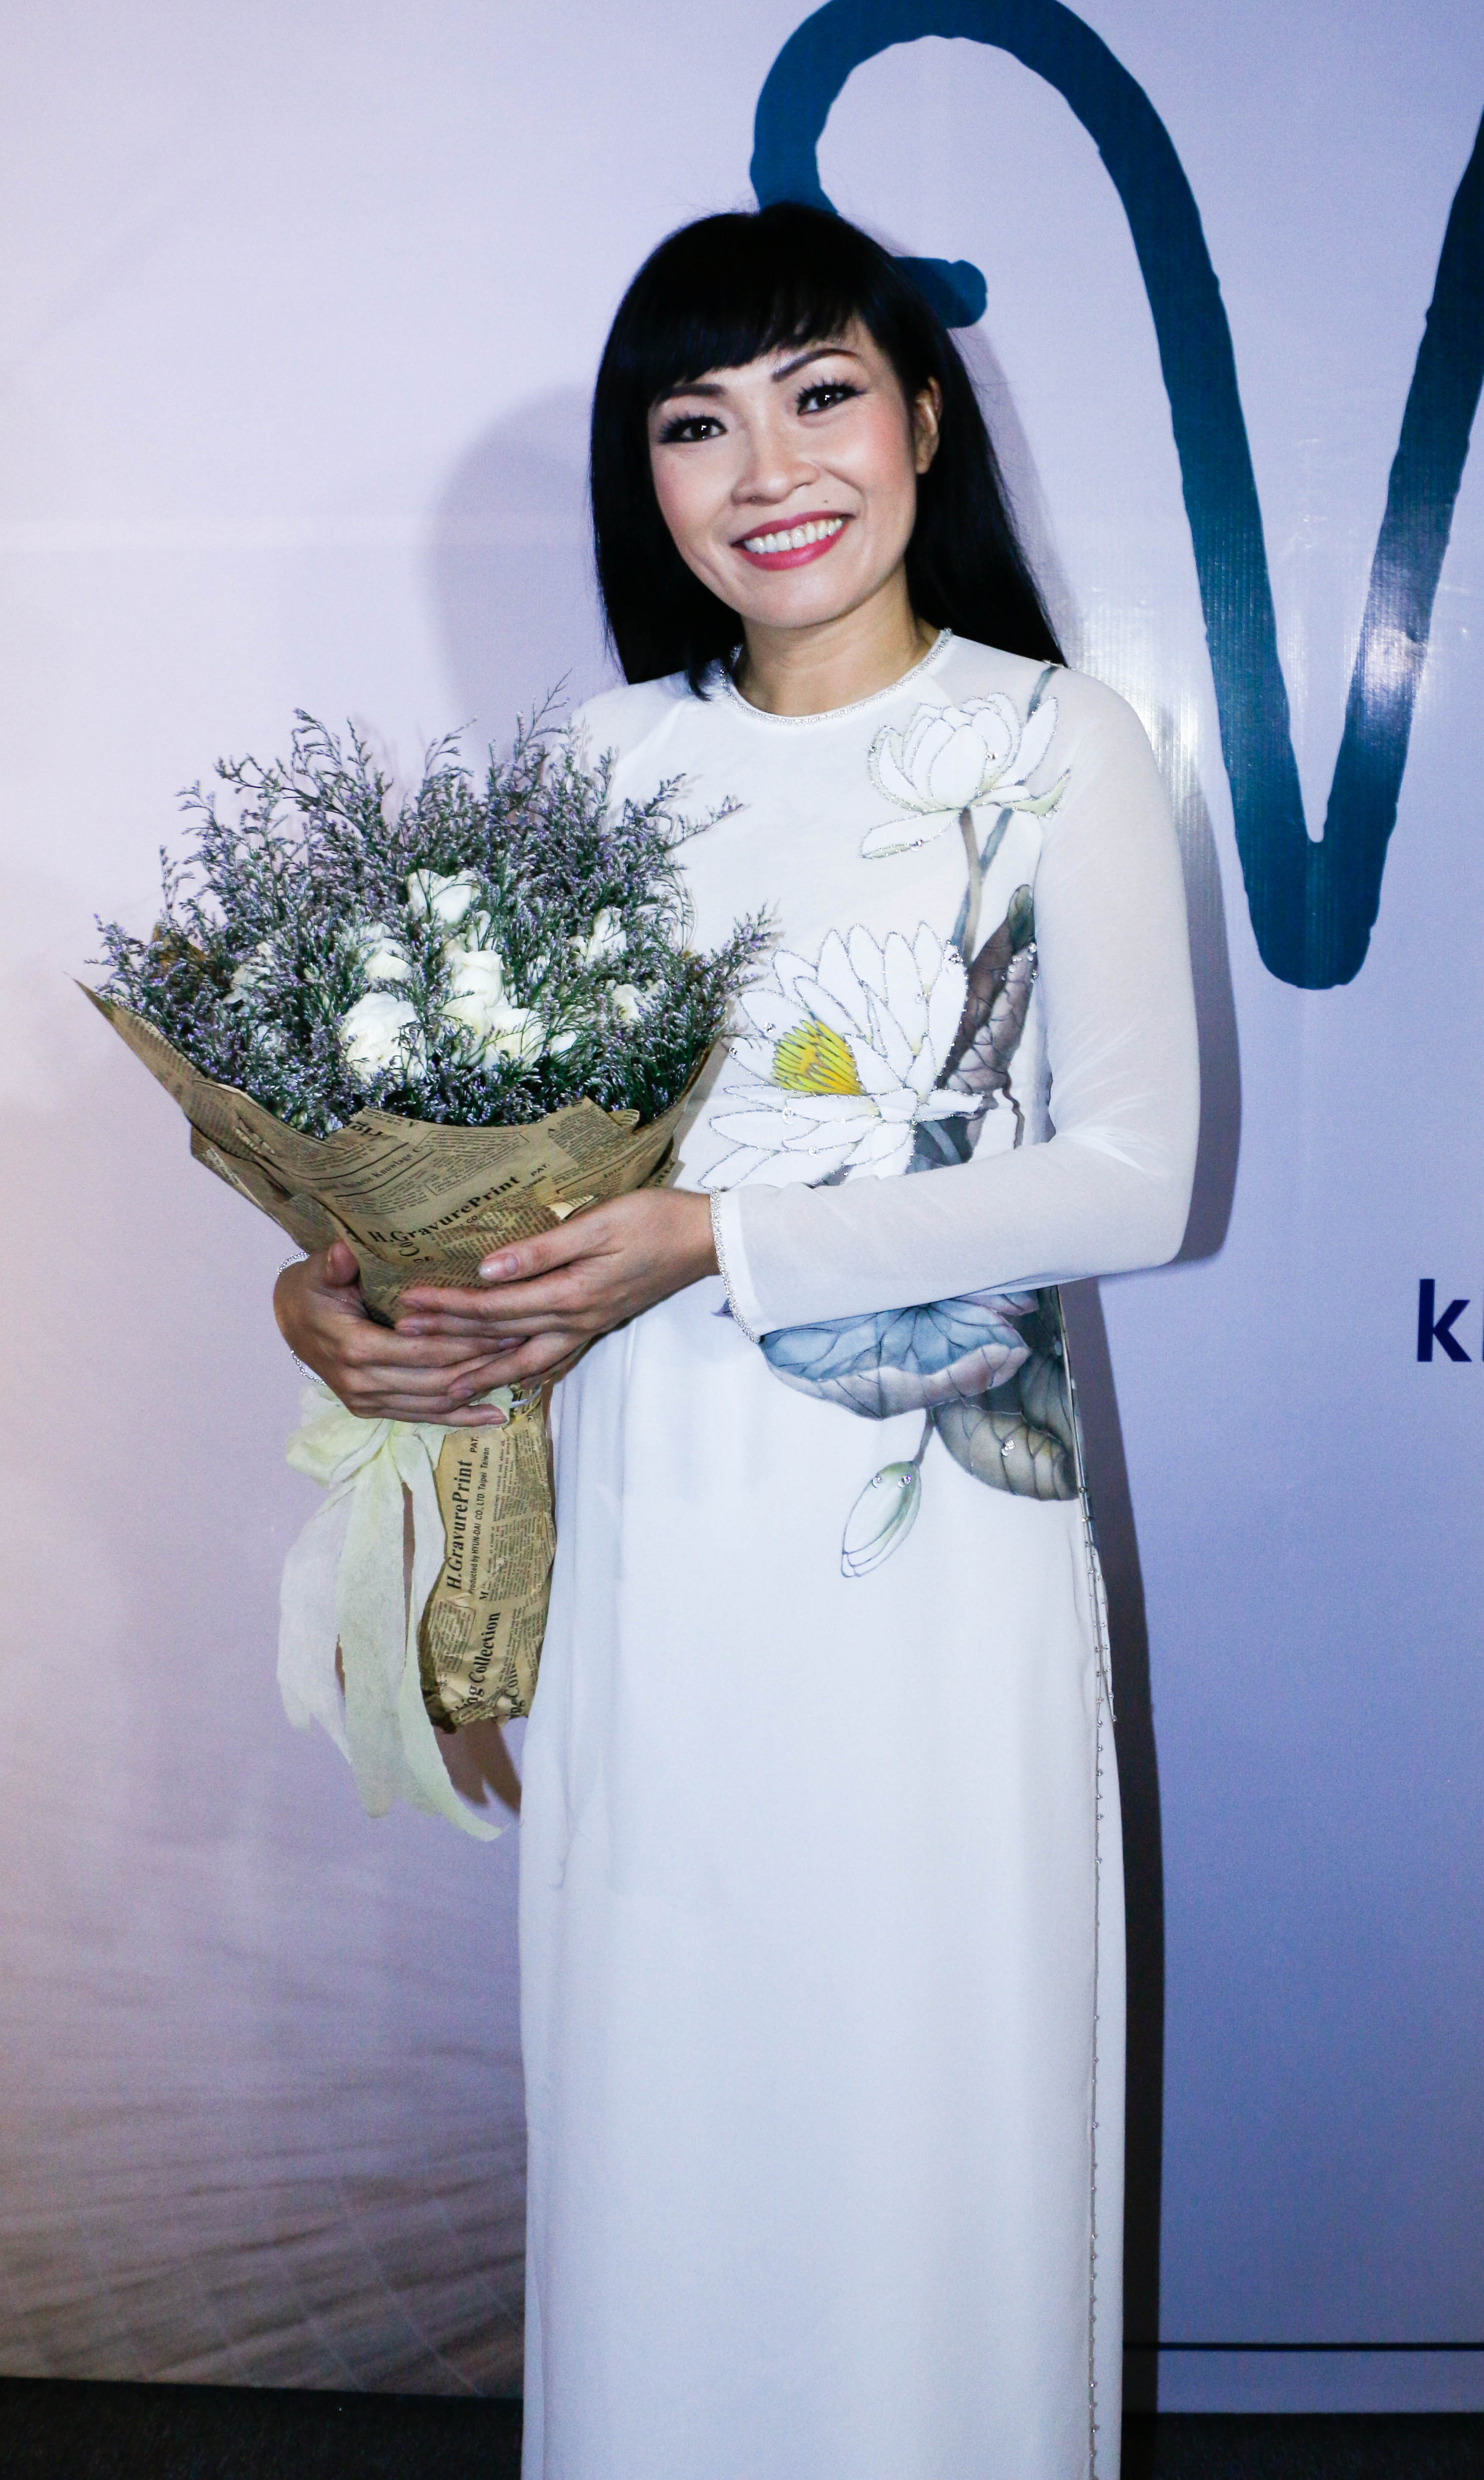 Ca sĩ Phương Thanh trò chuyện thân tình trong chương trình, chị bày tỏ sự biết ơn với tất cả những người trẻ đã có cơ duyên làm việc với chị trong những sản phẩm mới nhất này.